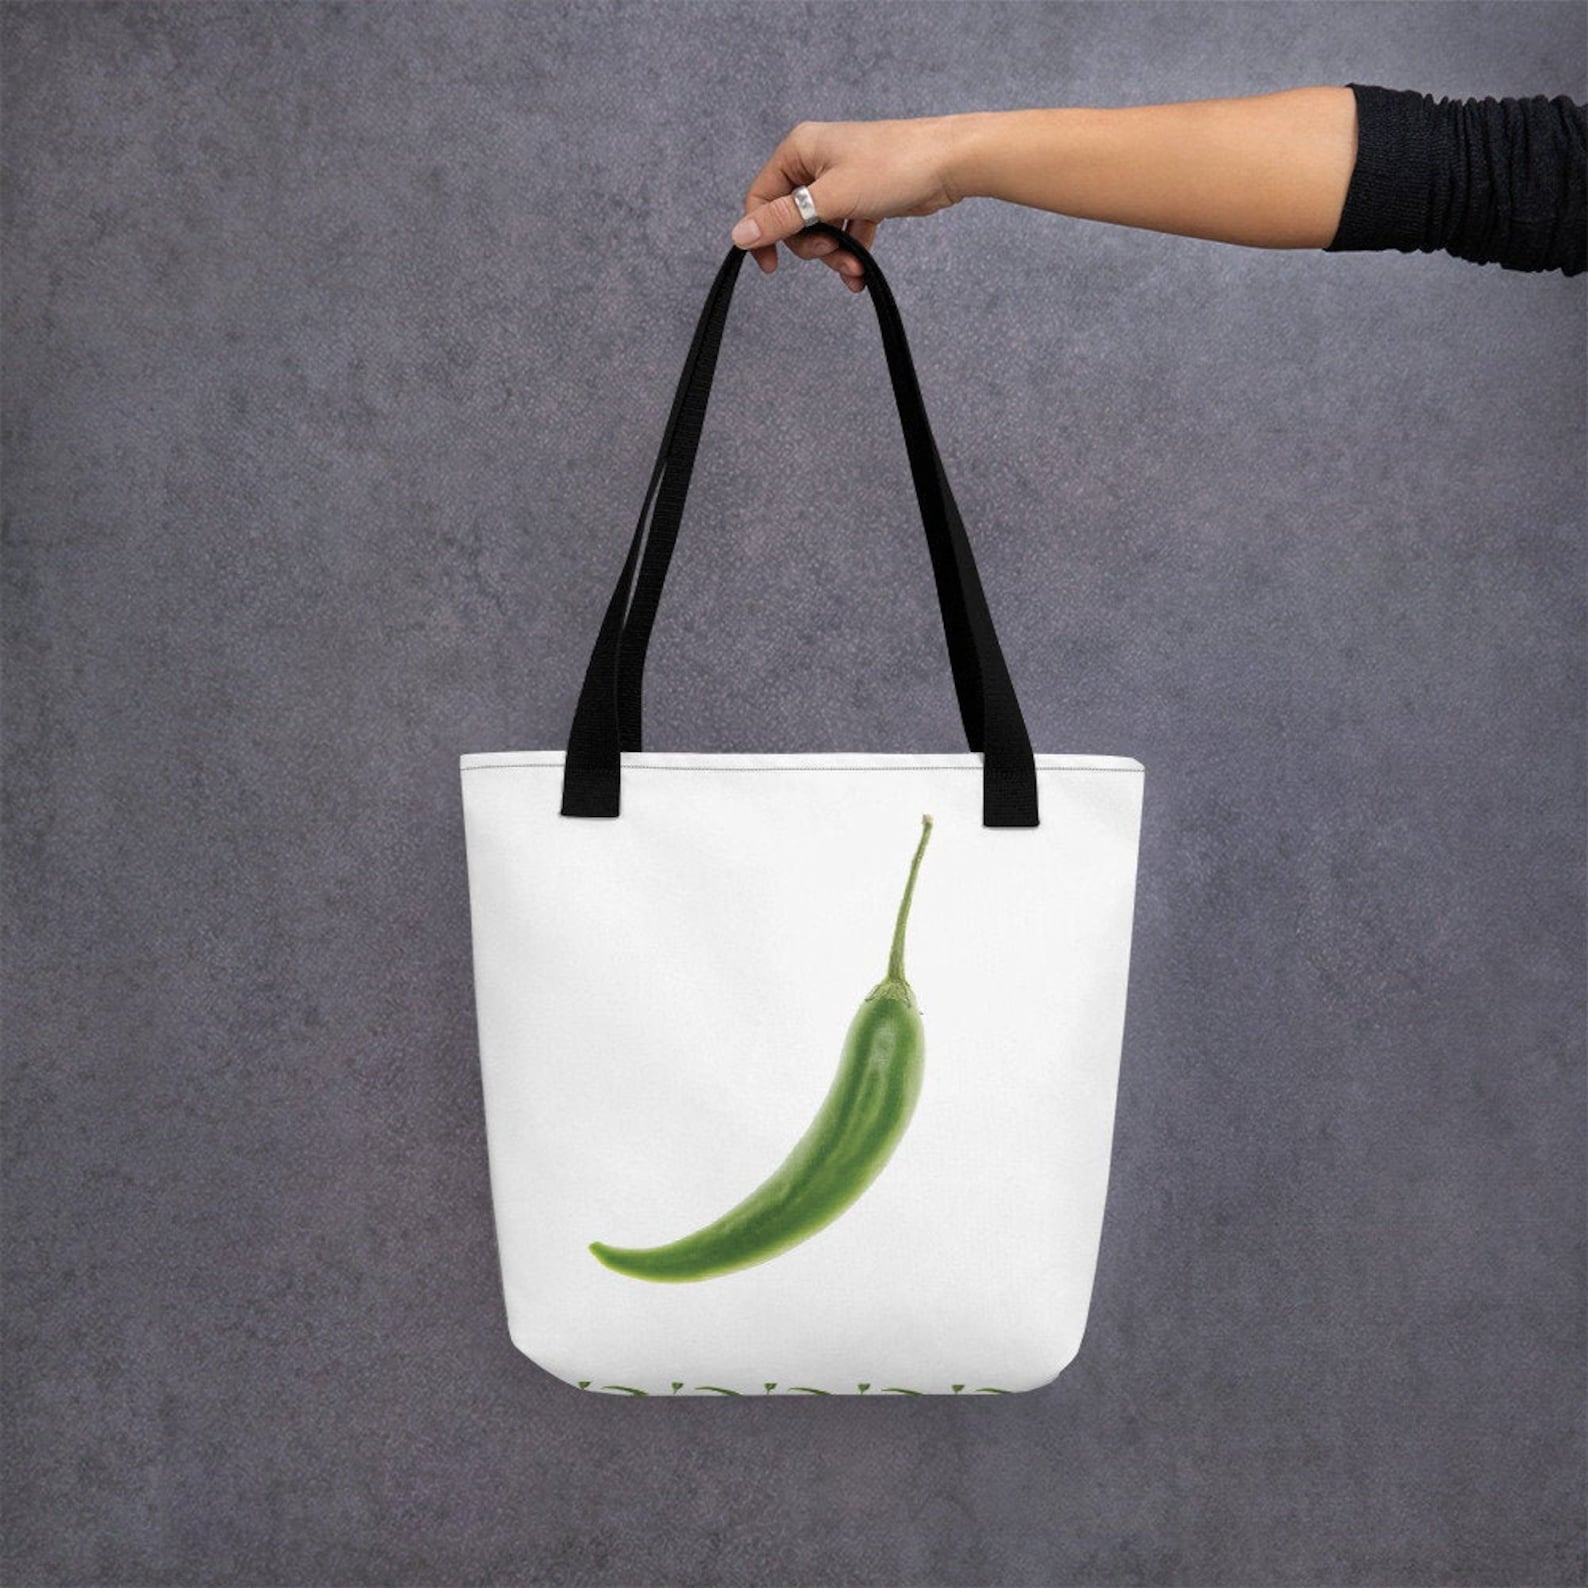 Green Chili Tote Bag | Etsy